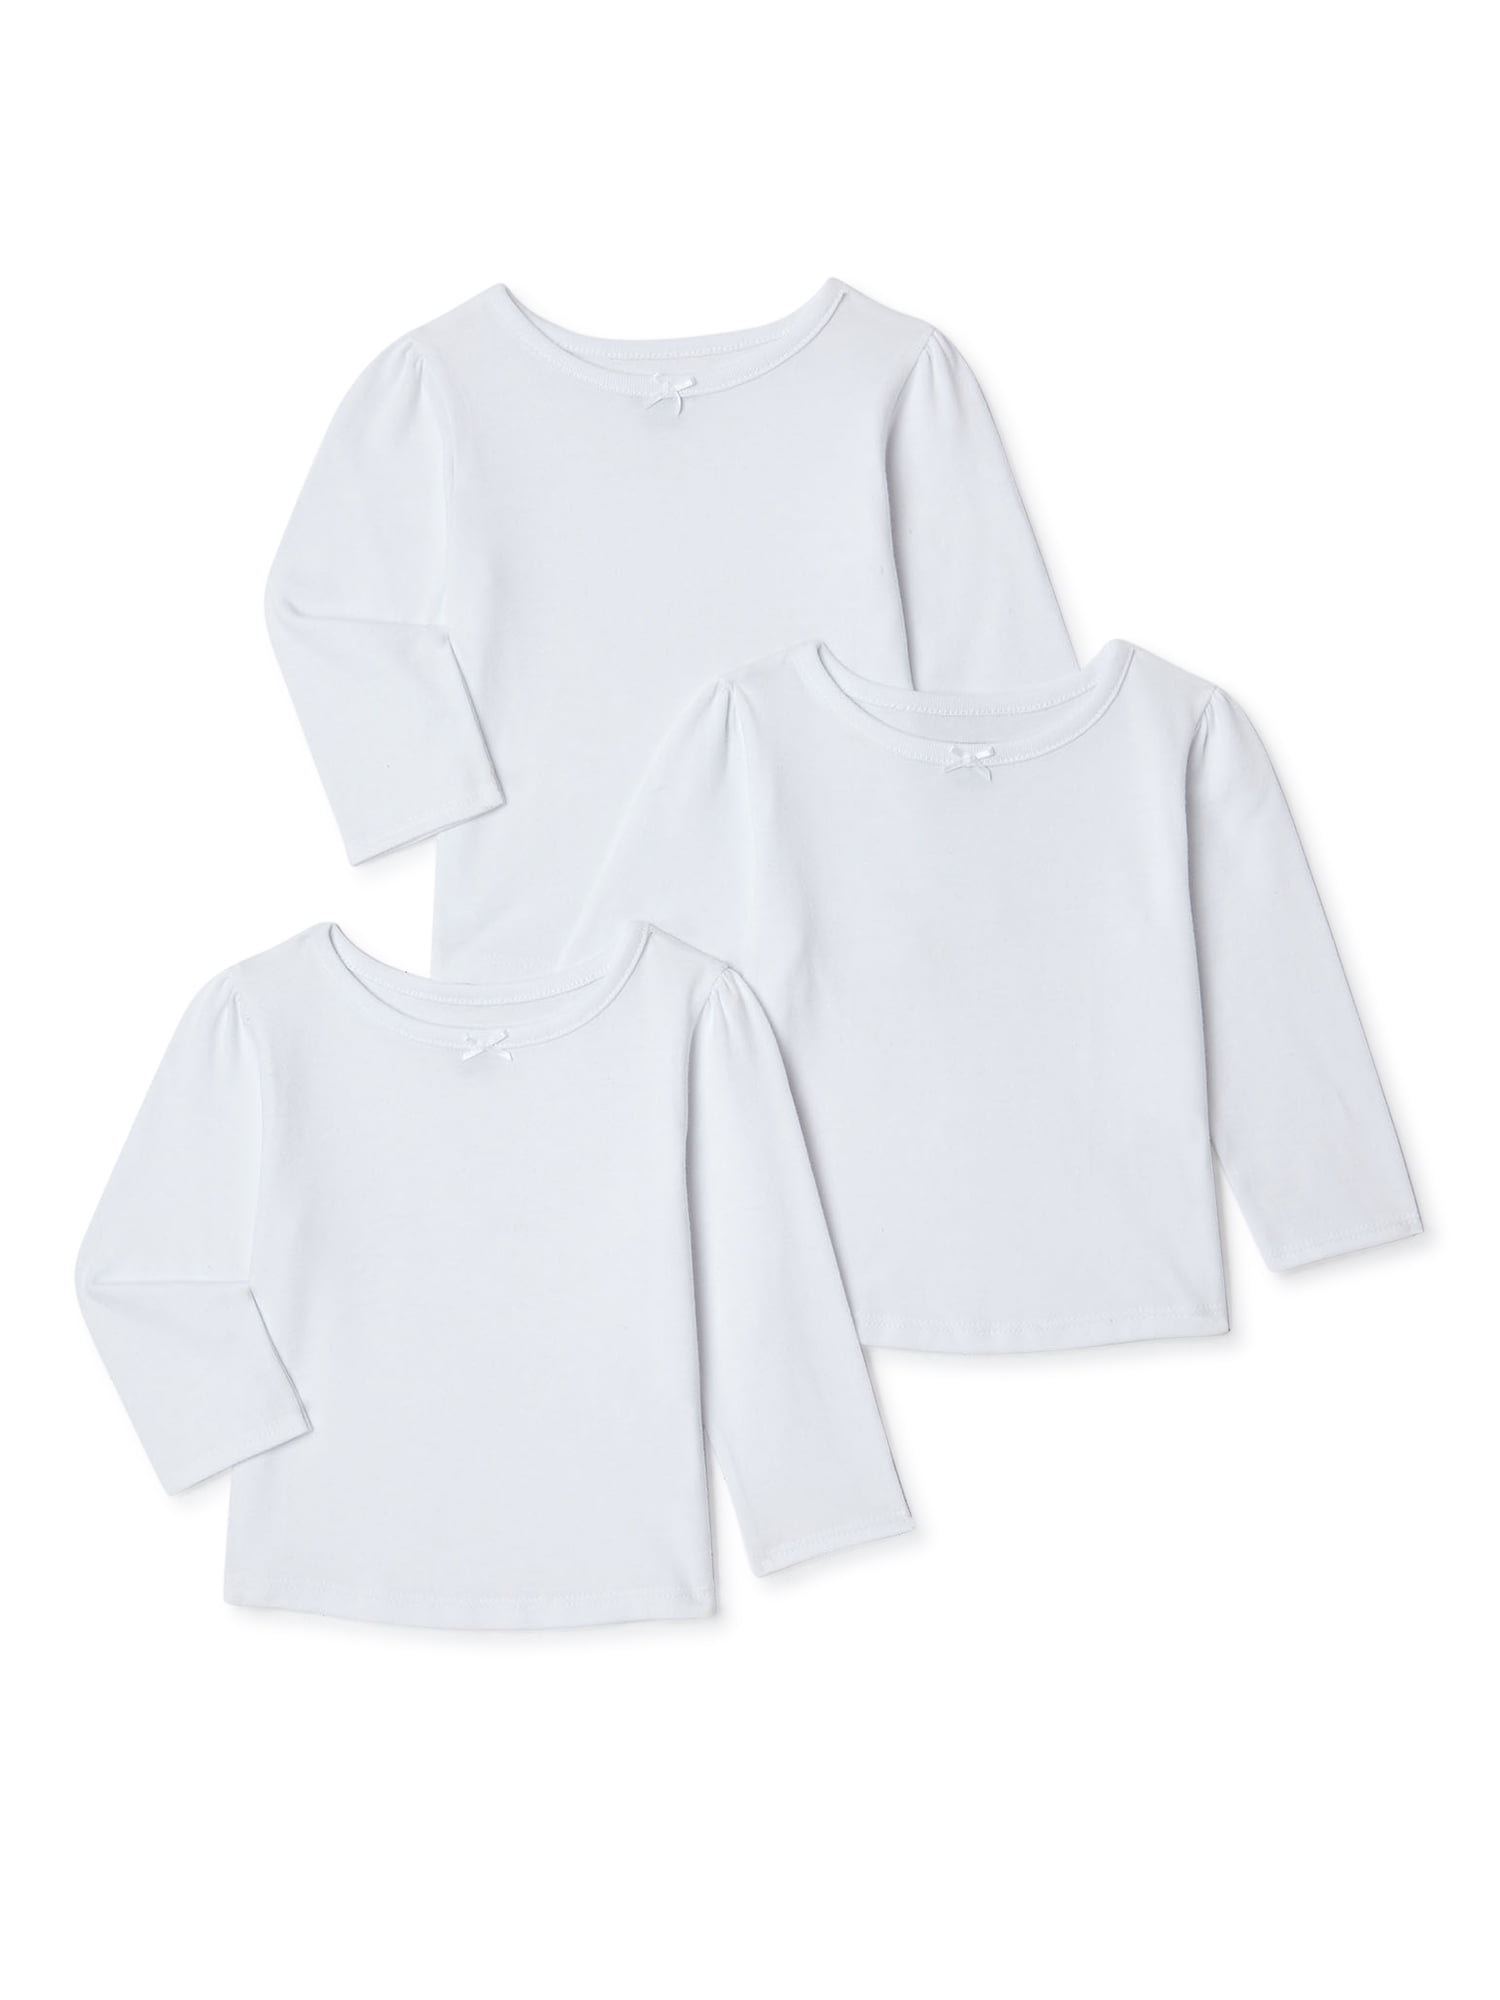 3t healthtex shirt Kleding Meisjeskleding Tops & T-shirts Blouses 